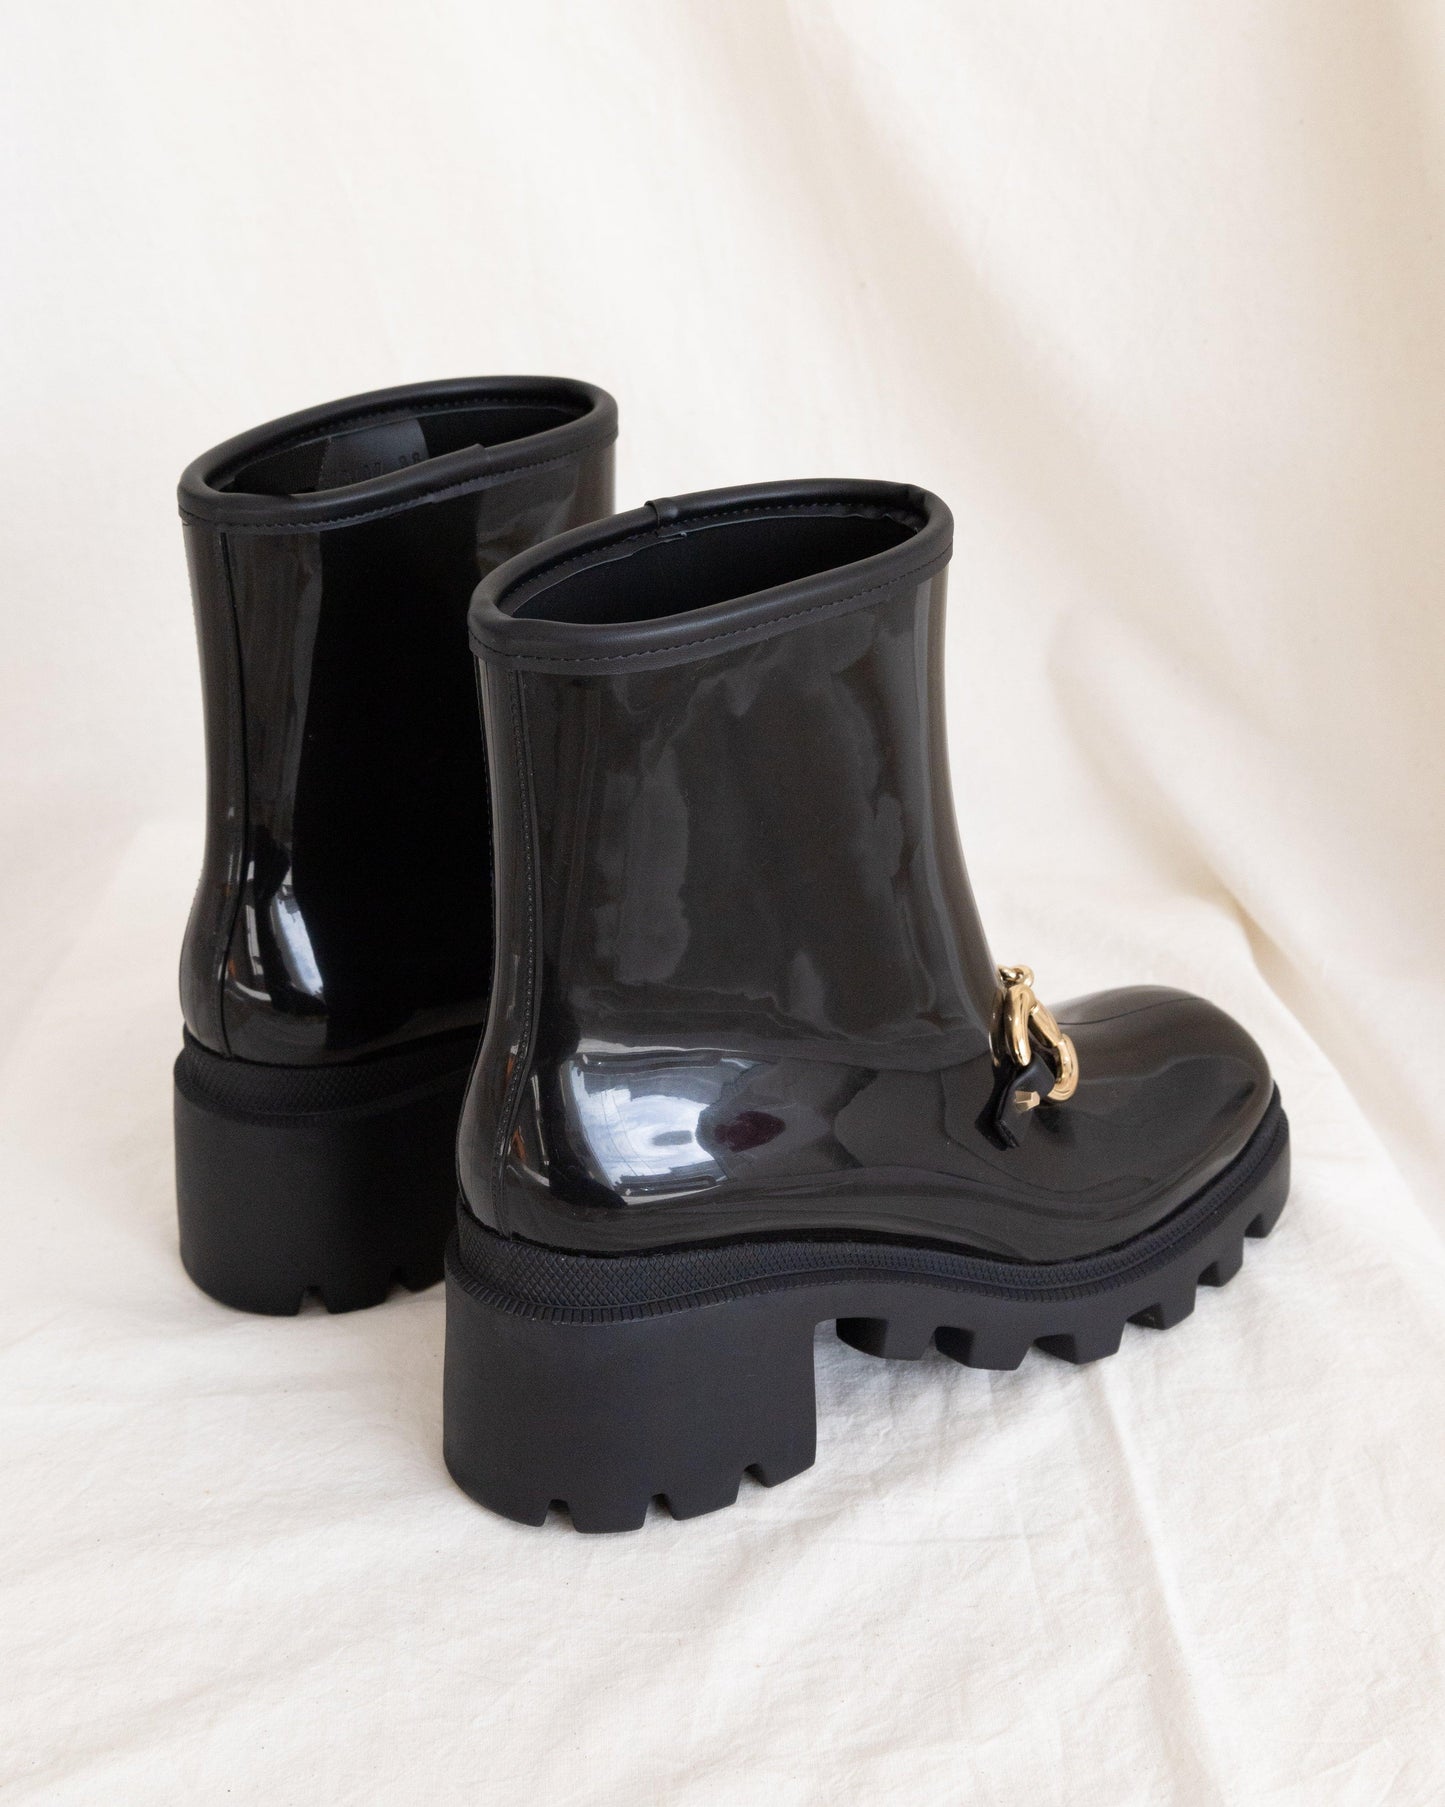 GUCCI Rain Boots 38 - THE VOG CLOSET